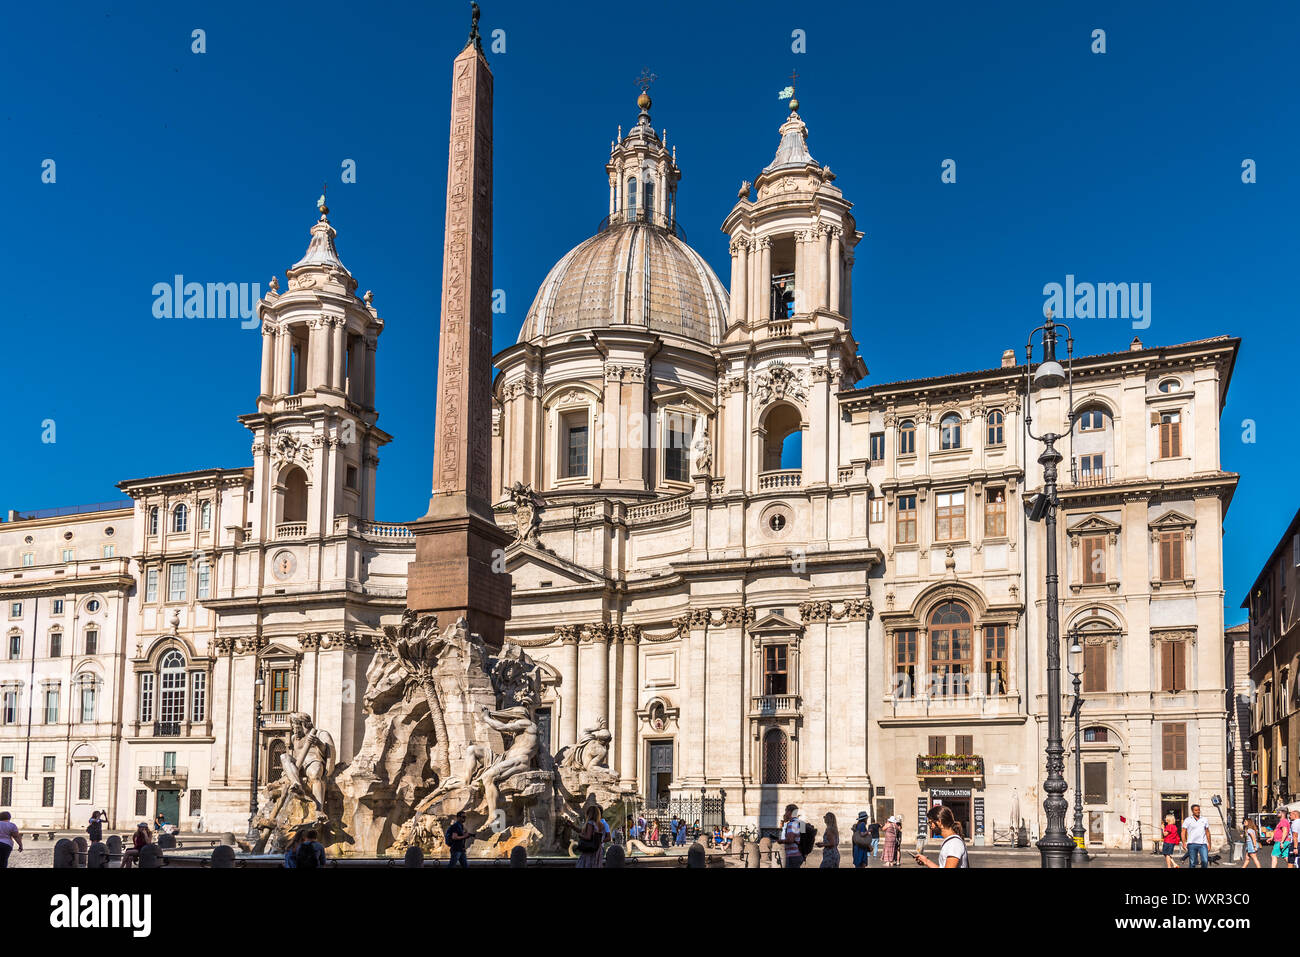 Rome, Italie - 17 juillet 2019 - Place Navona ou Piazza Navona à Rome, Italie avec fontaine. L'architecture de Rome et landmark Banque D'Images